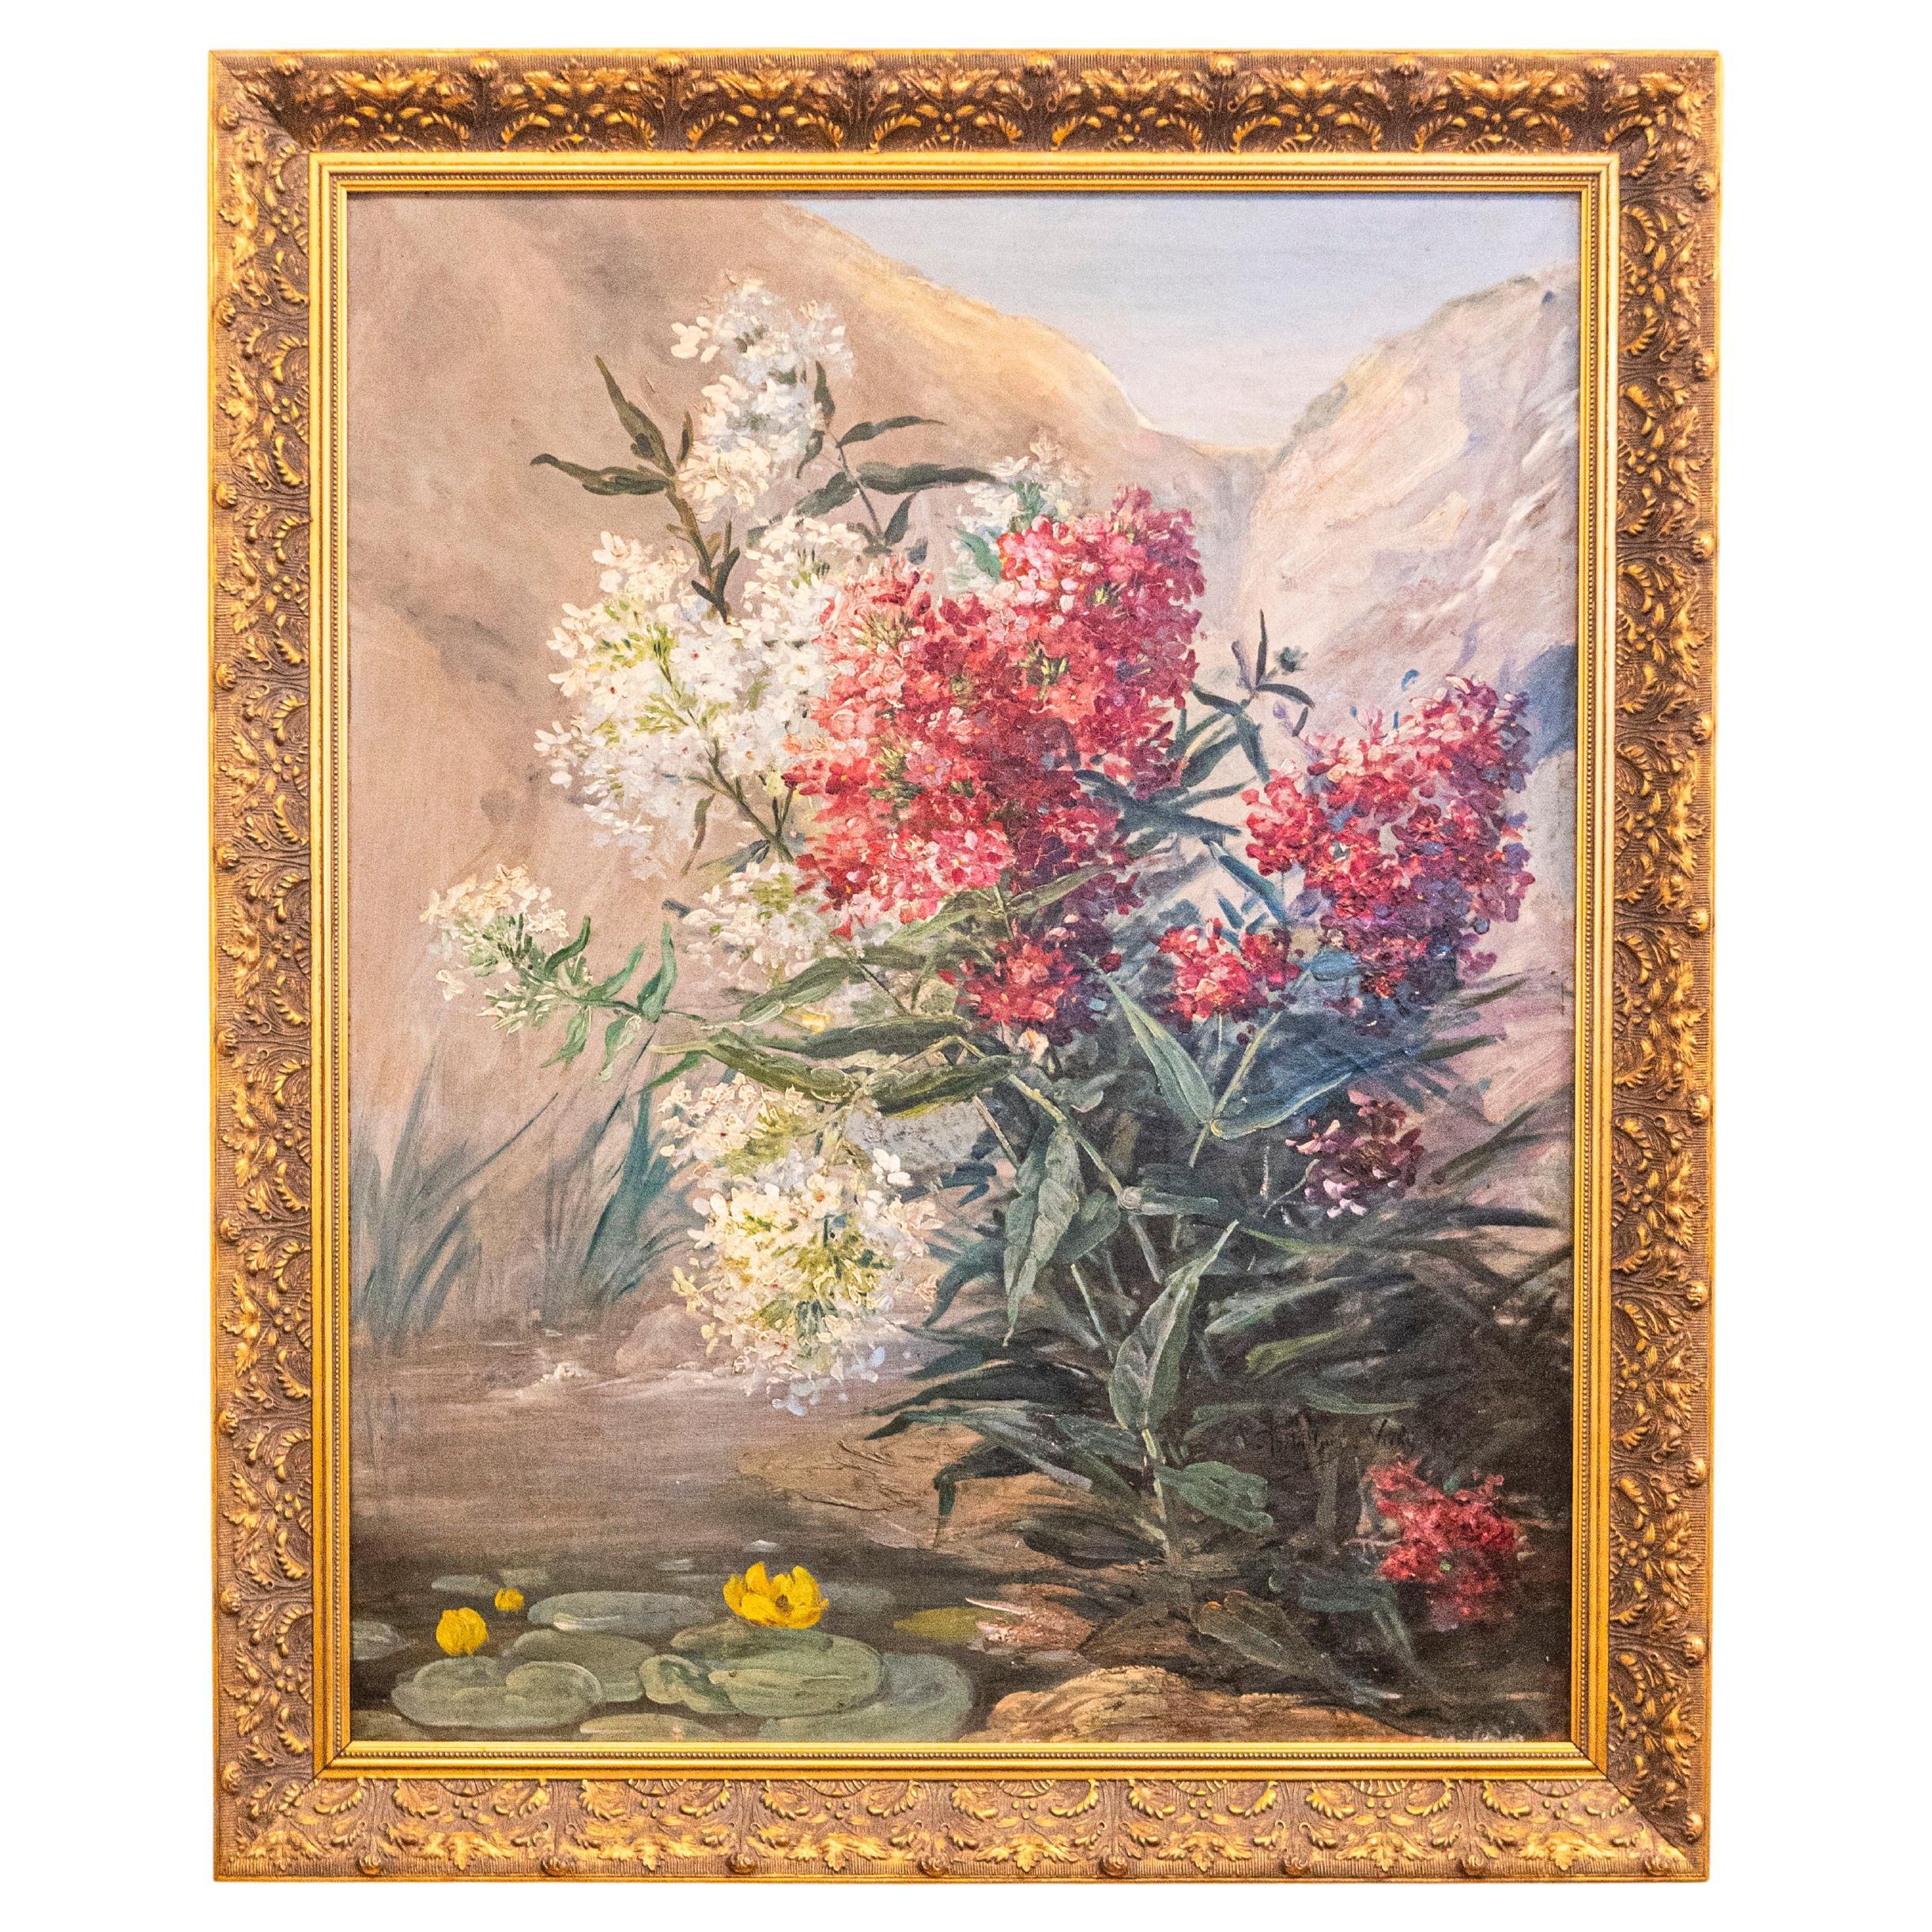 Französisches Stillleben des späten 19. Jahrhunderts, Öl auf Leinwand, Stillleben mit Blumendarstellung